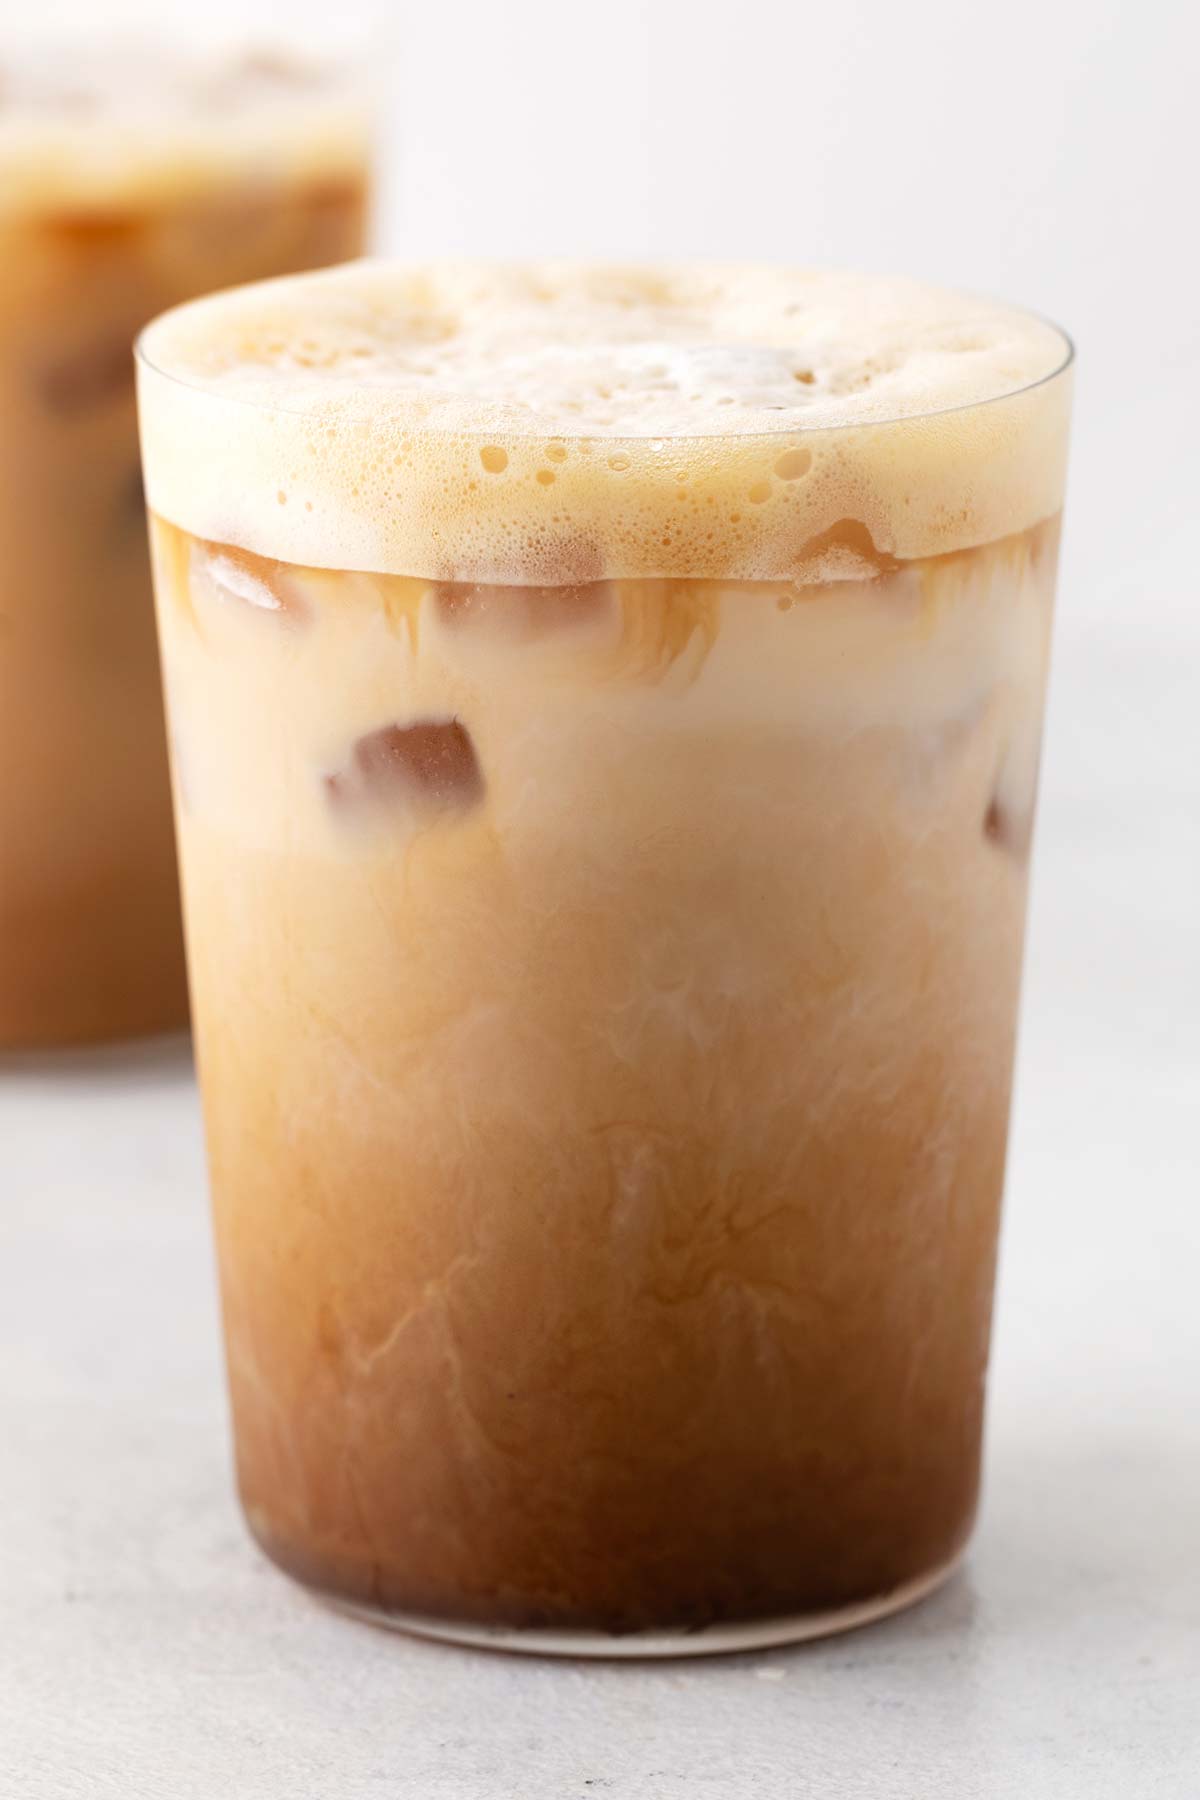 Starbucks Iced Shaken Espresso copycat drink in a cup.